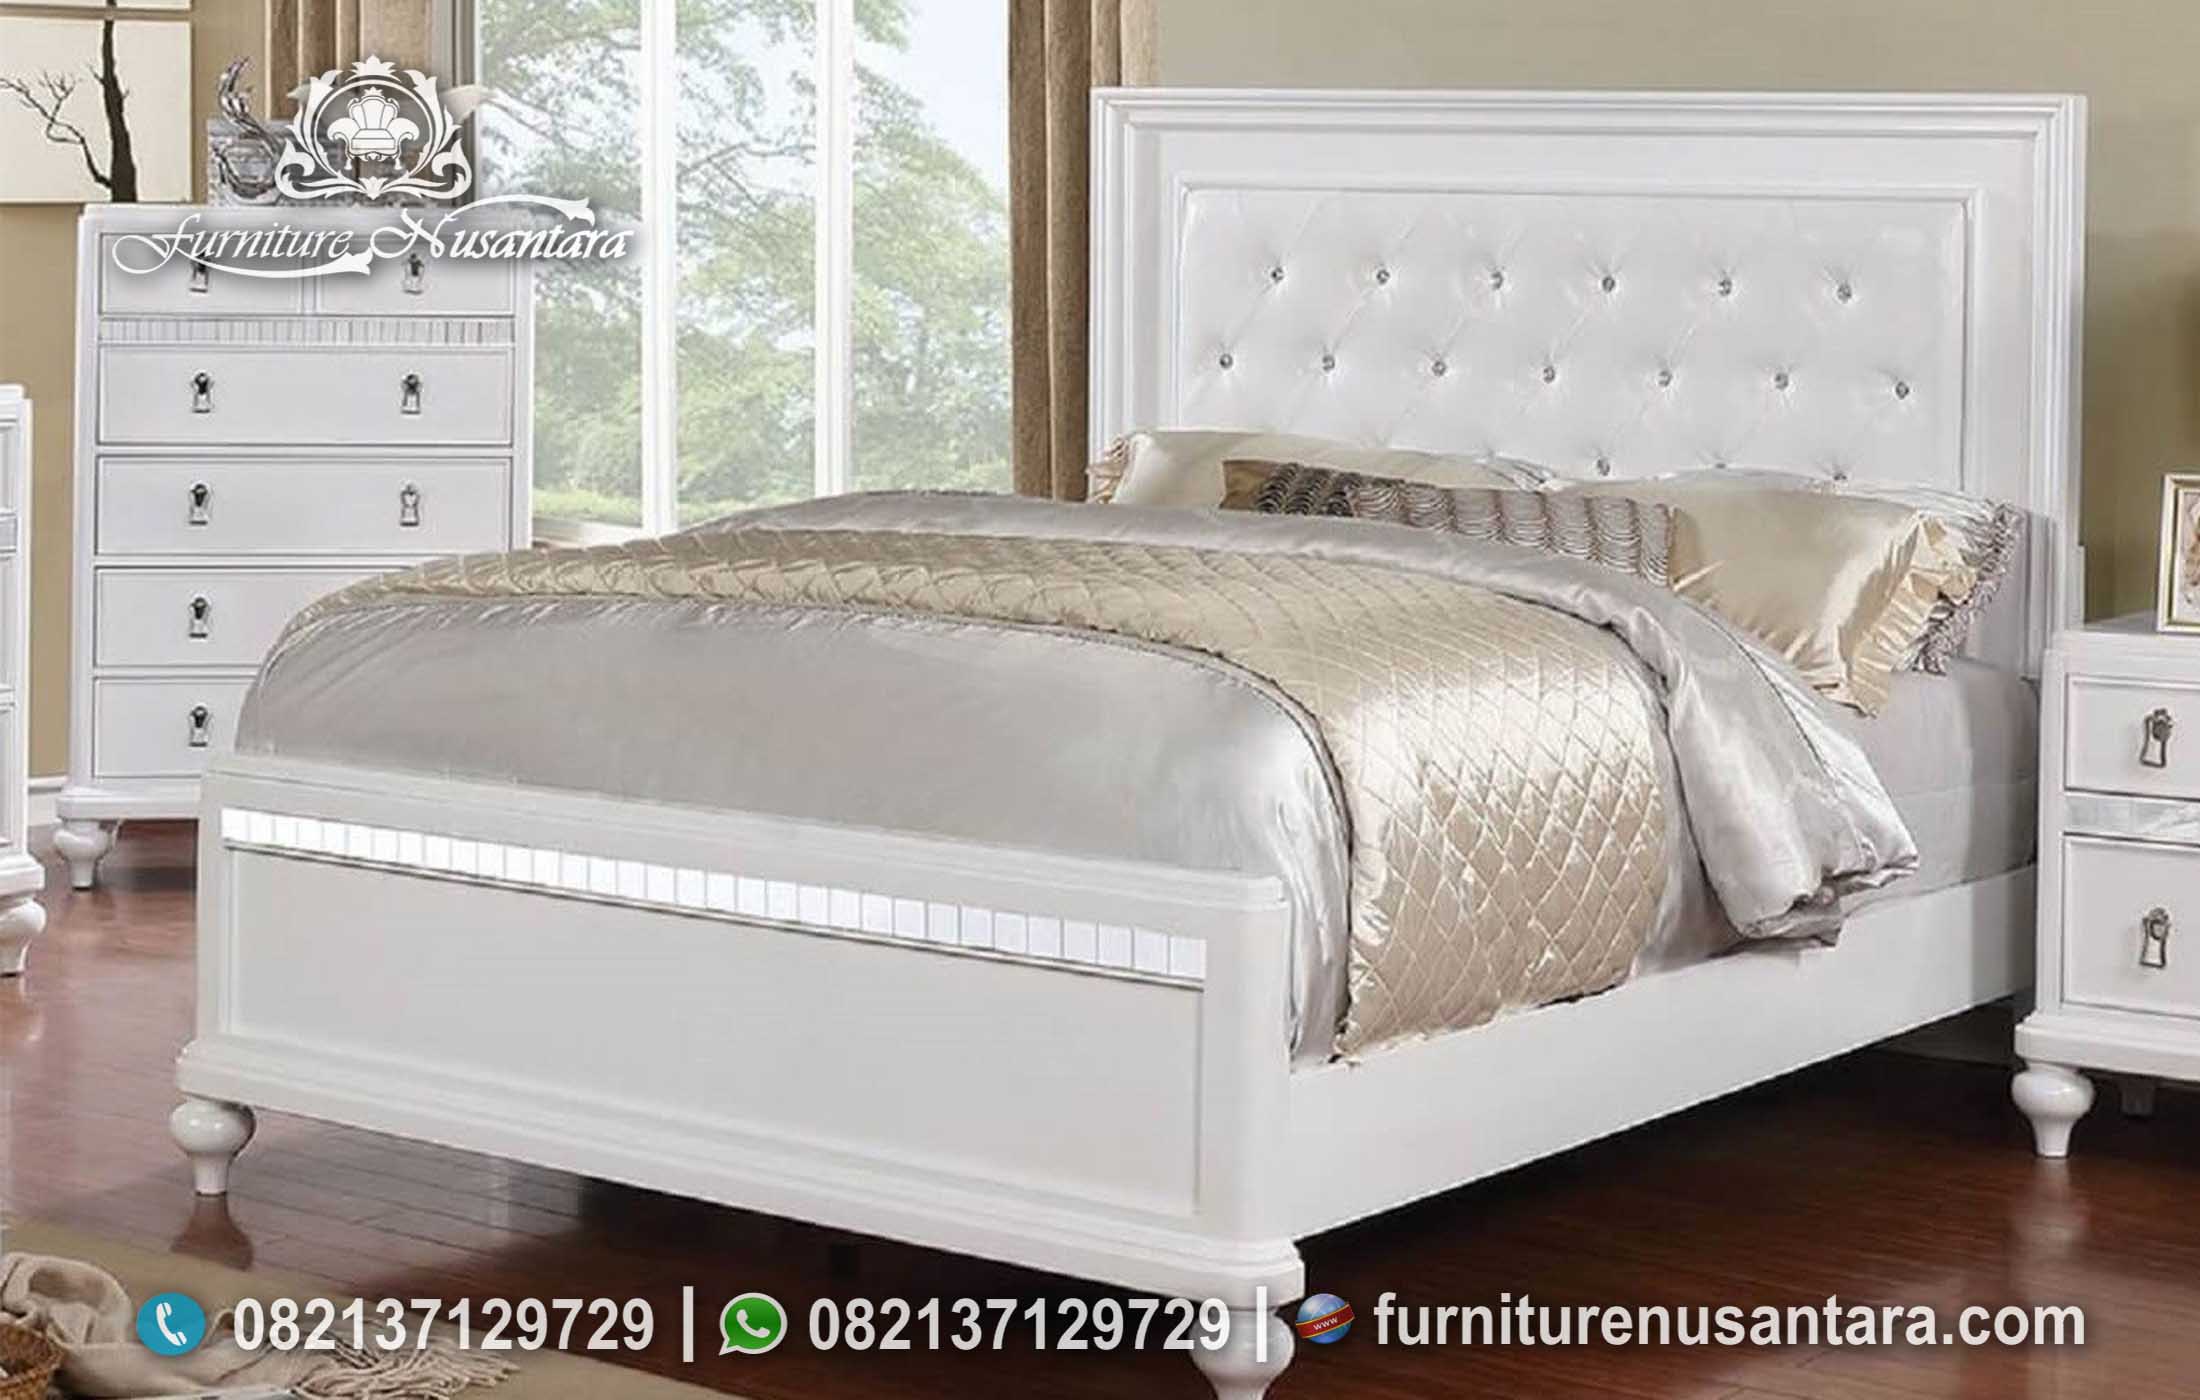 Jual Tempat Tidur Minimalis Kayu Solid Putih KS-220, Furniture Nusantara